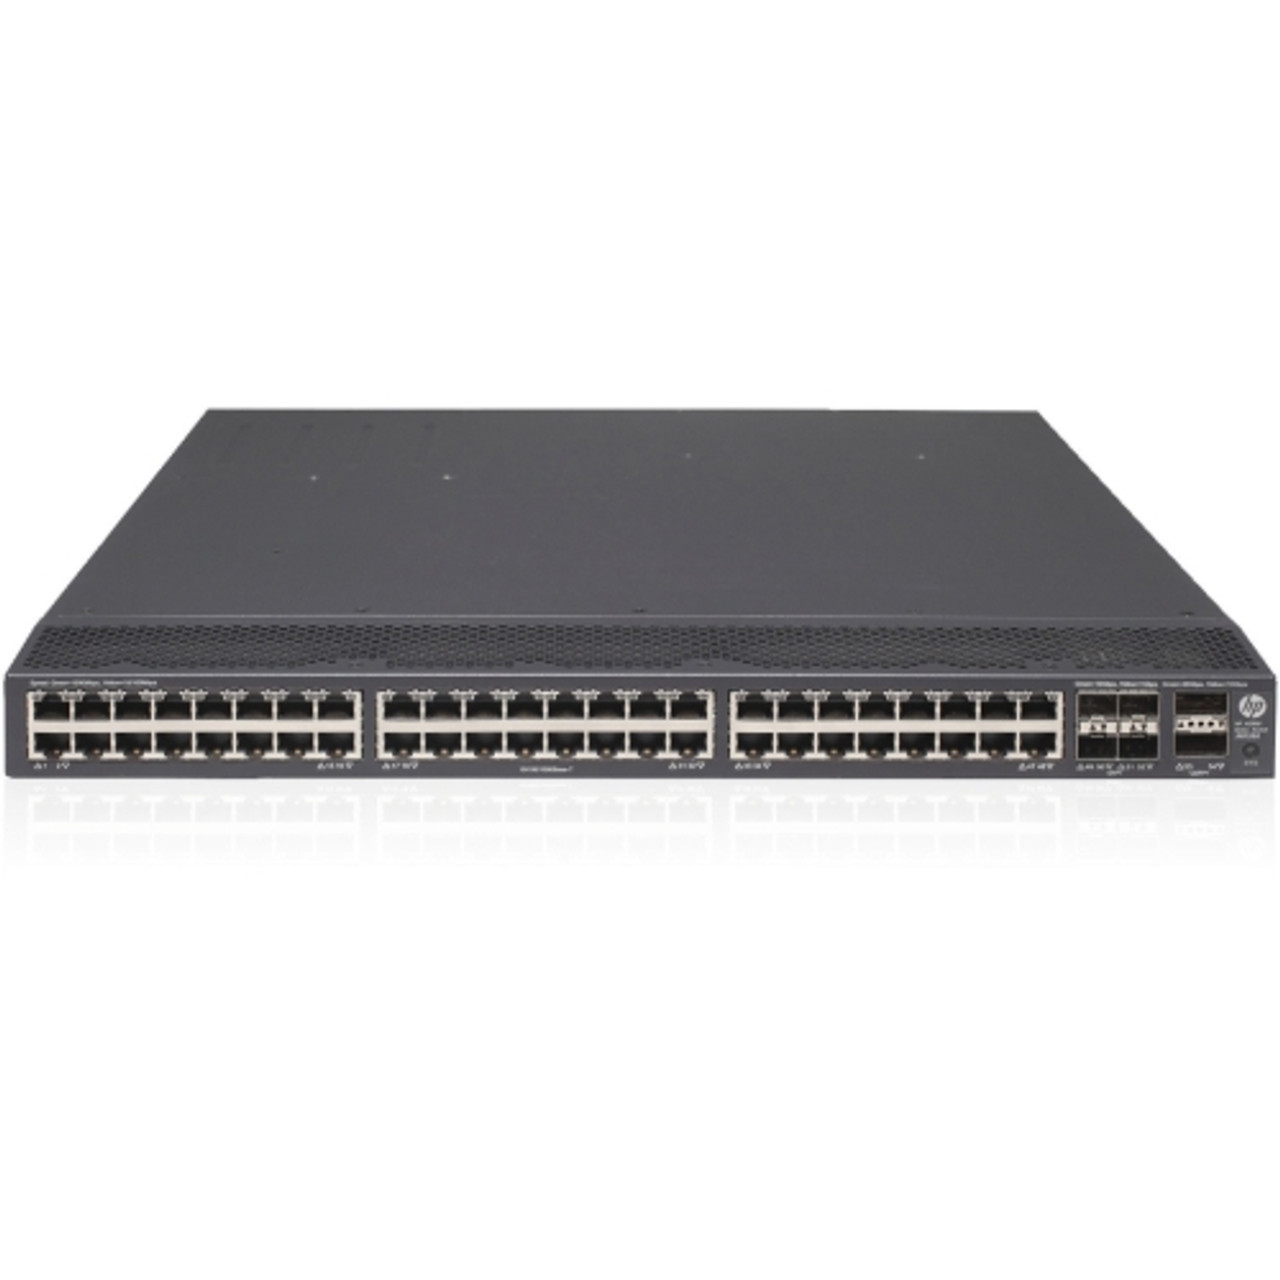 JH038A HP 5900AF-48G-4XG-2QSFP+ 48-Ports QSFP+ 10/100/1000Base-T PoE Manageable Layer 3 Rack-Mountable 1U Gigabit Ethernet Switch (Refurbished)